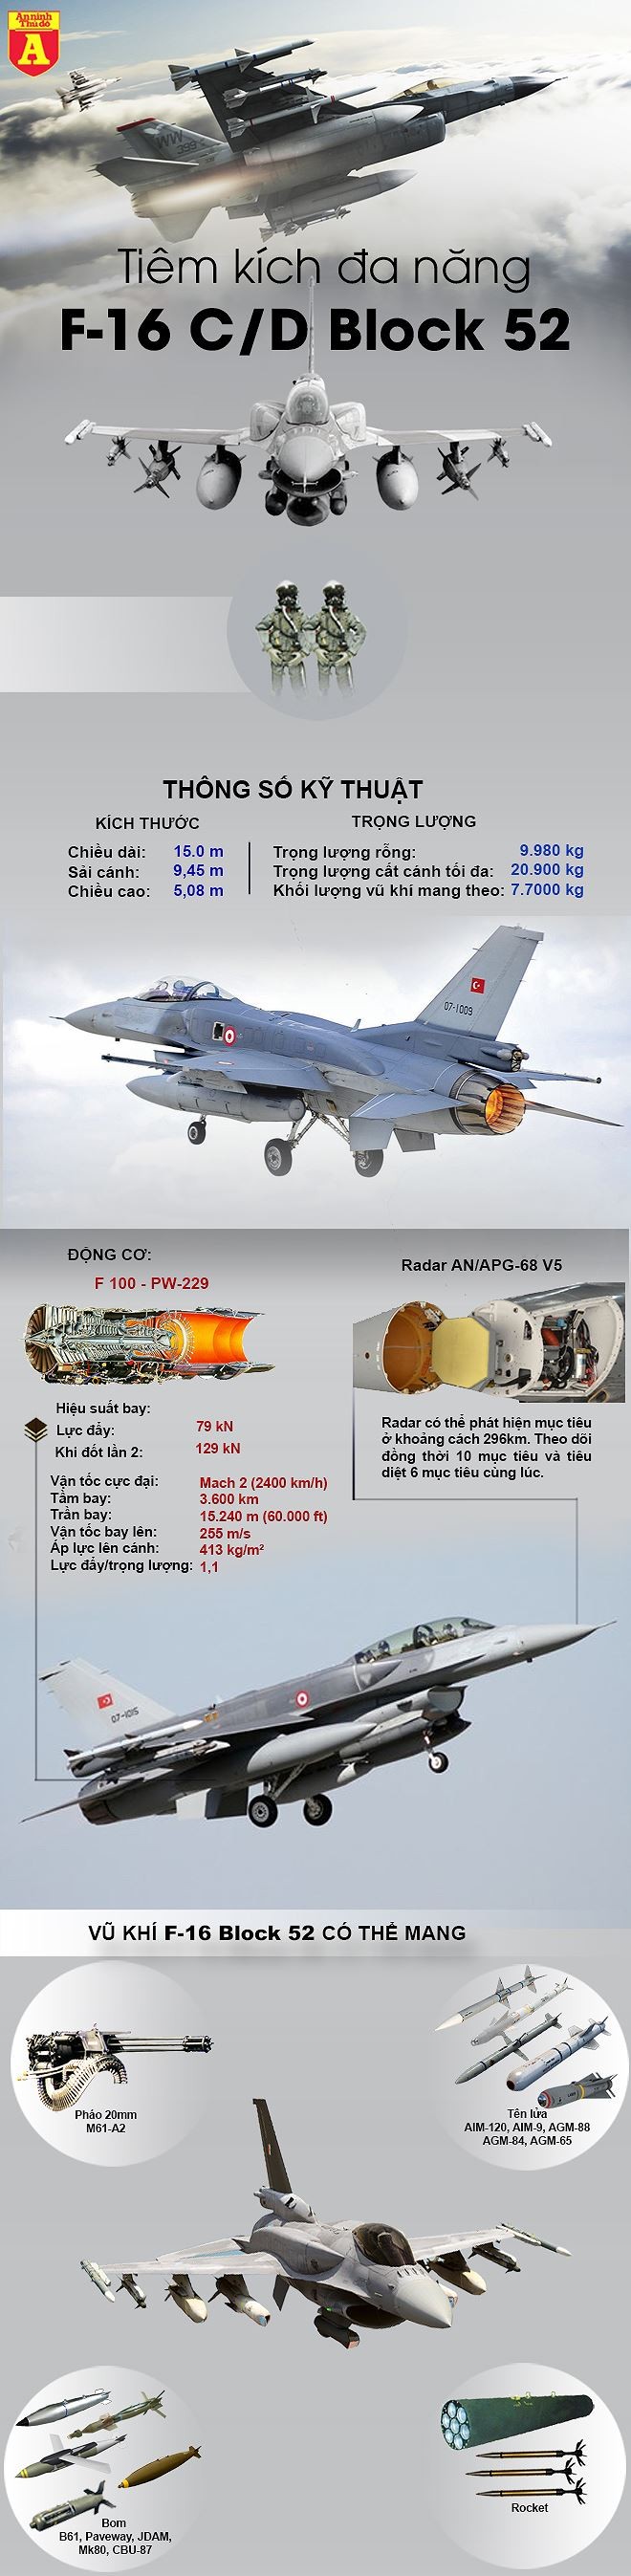 [Infographic] Tiêm kích chủ lực Thổ Nhĩ Kỳ vừa rơi từng khiến Nga ôm hận ảnh 2